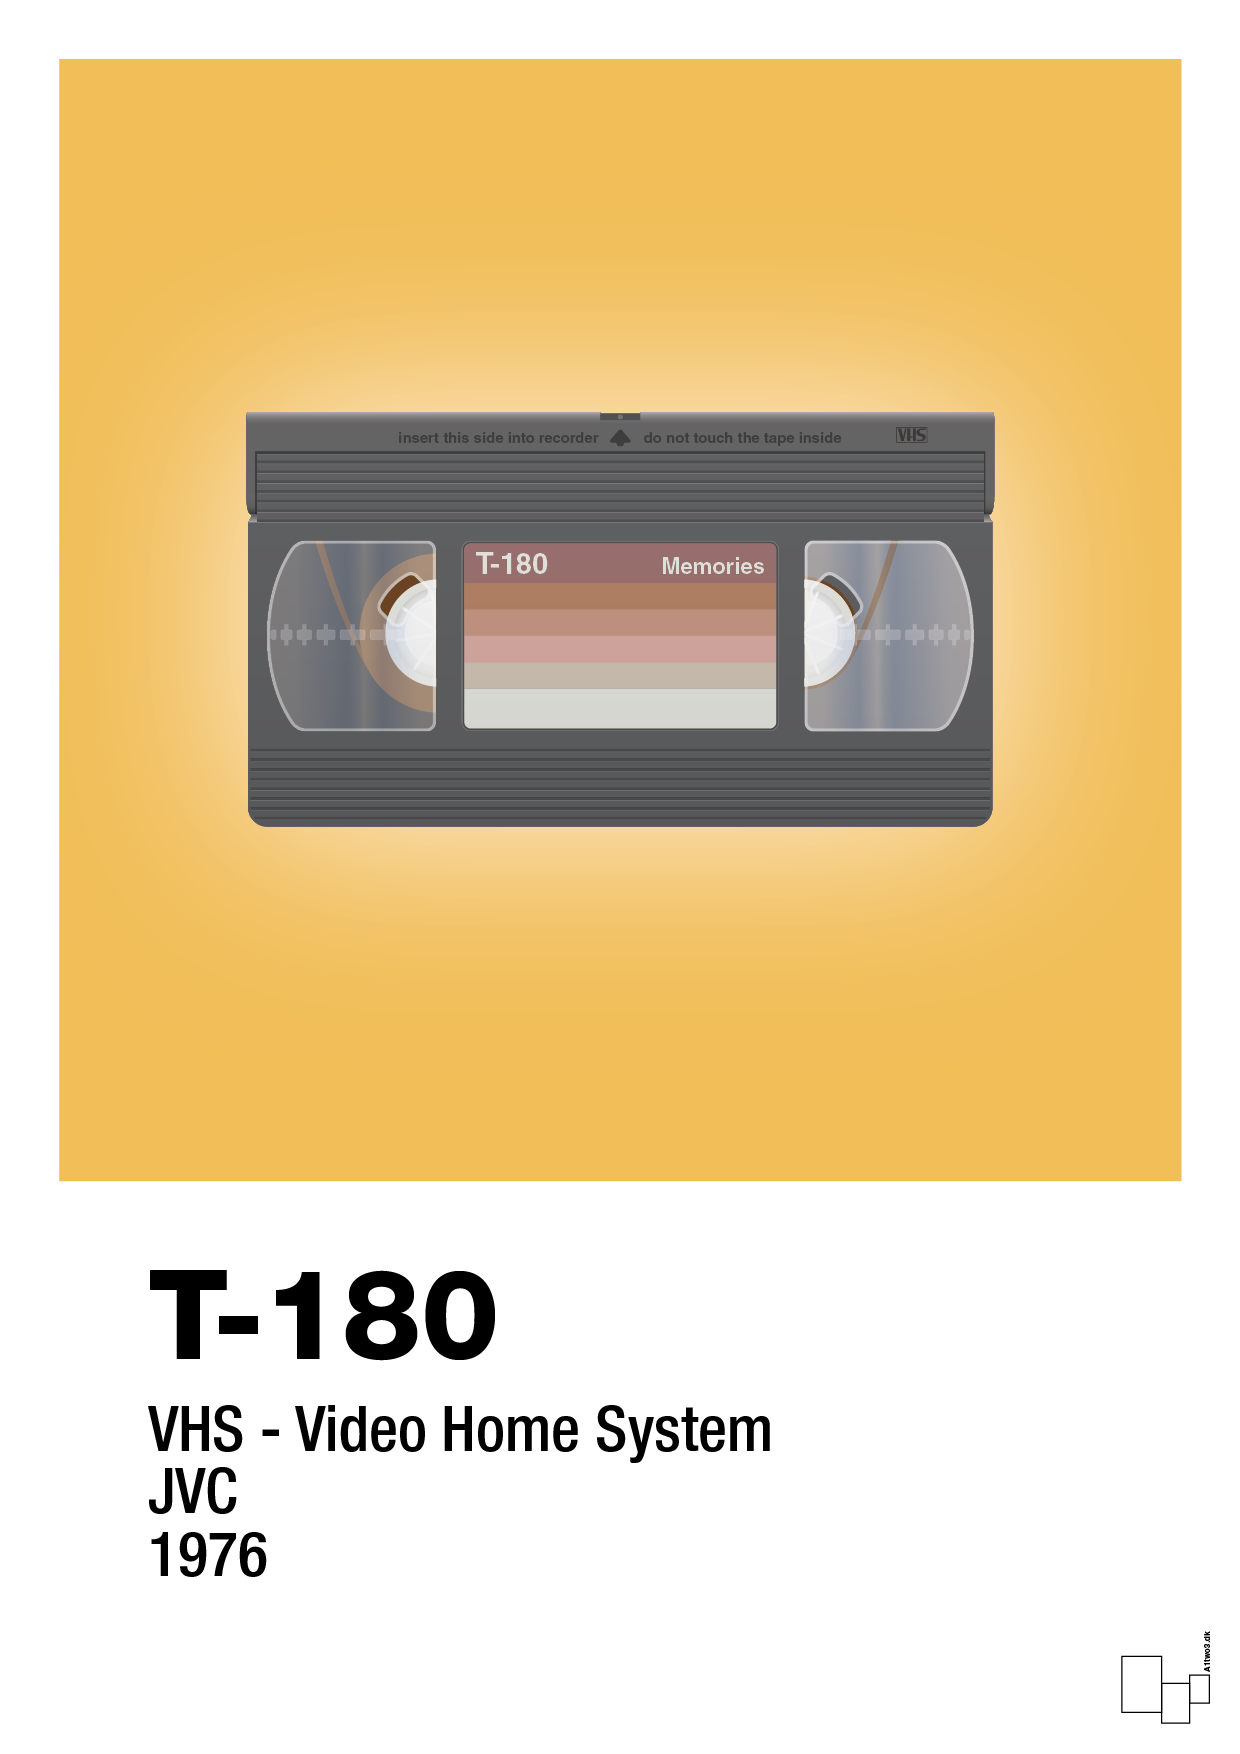 videobånd t-180 - Plakat med Grafik i Honeycomb